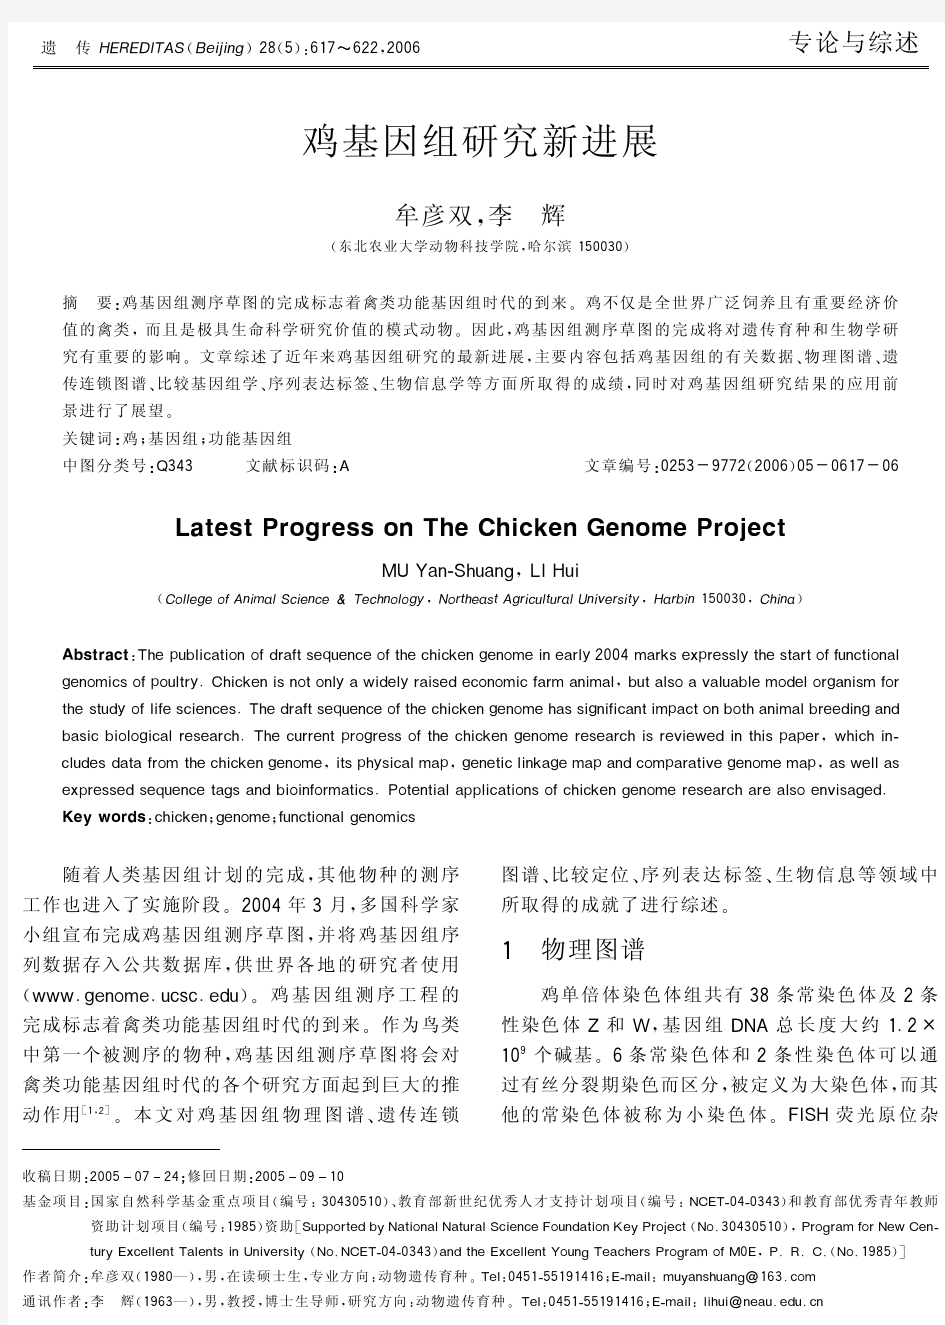 鸡基因组研究新进展